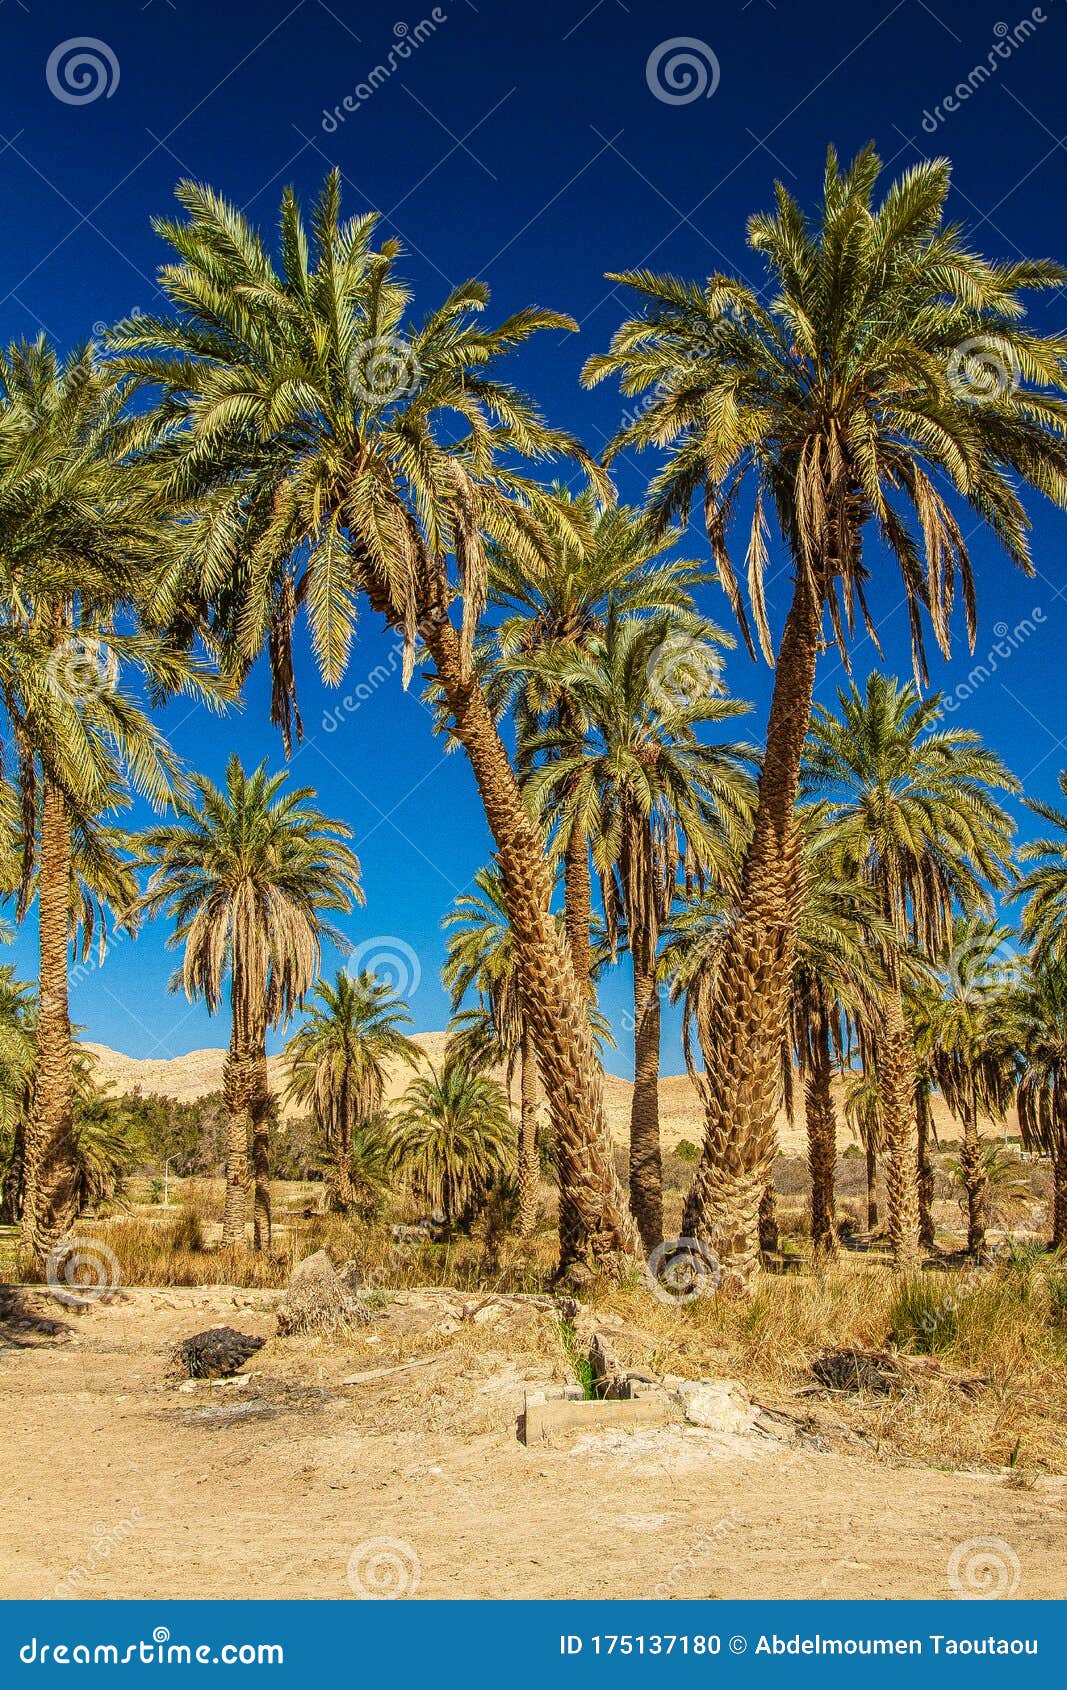 sahara desert in algeria